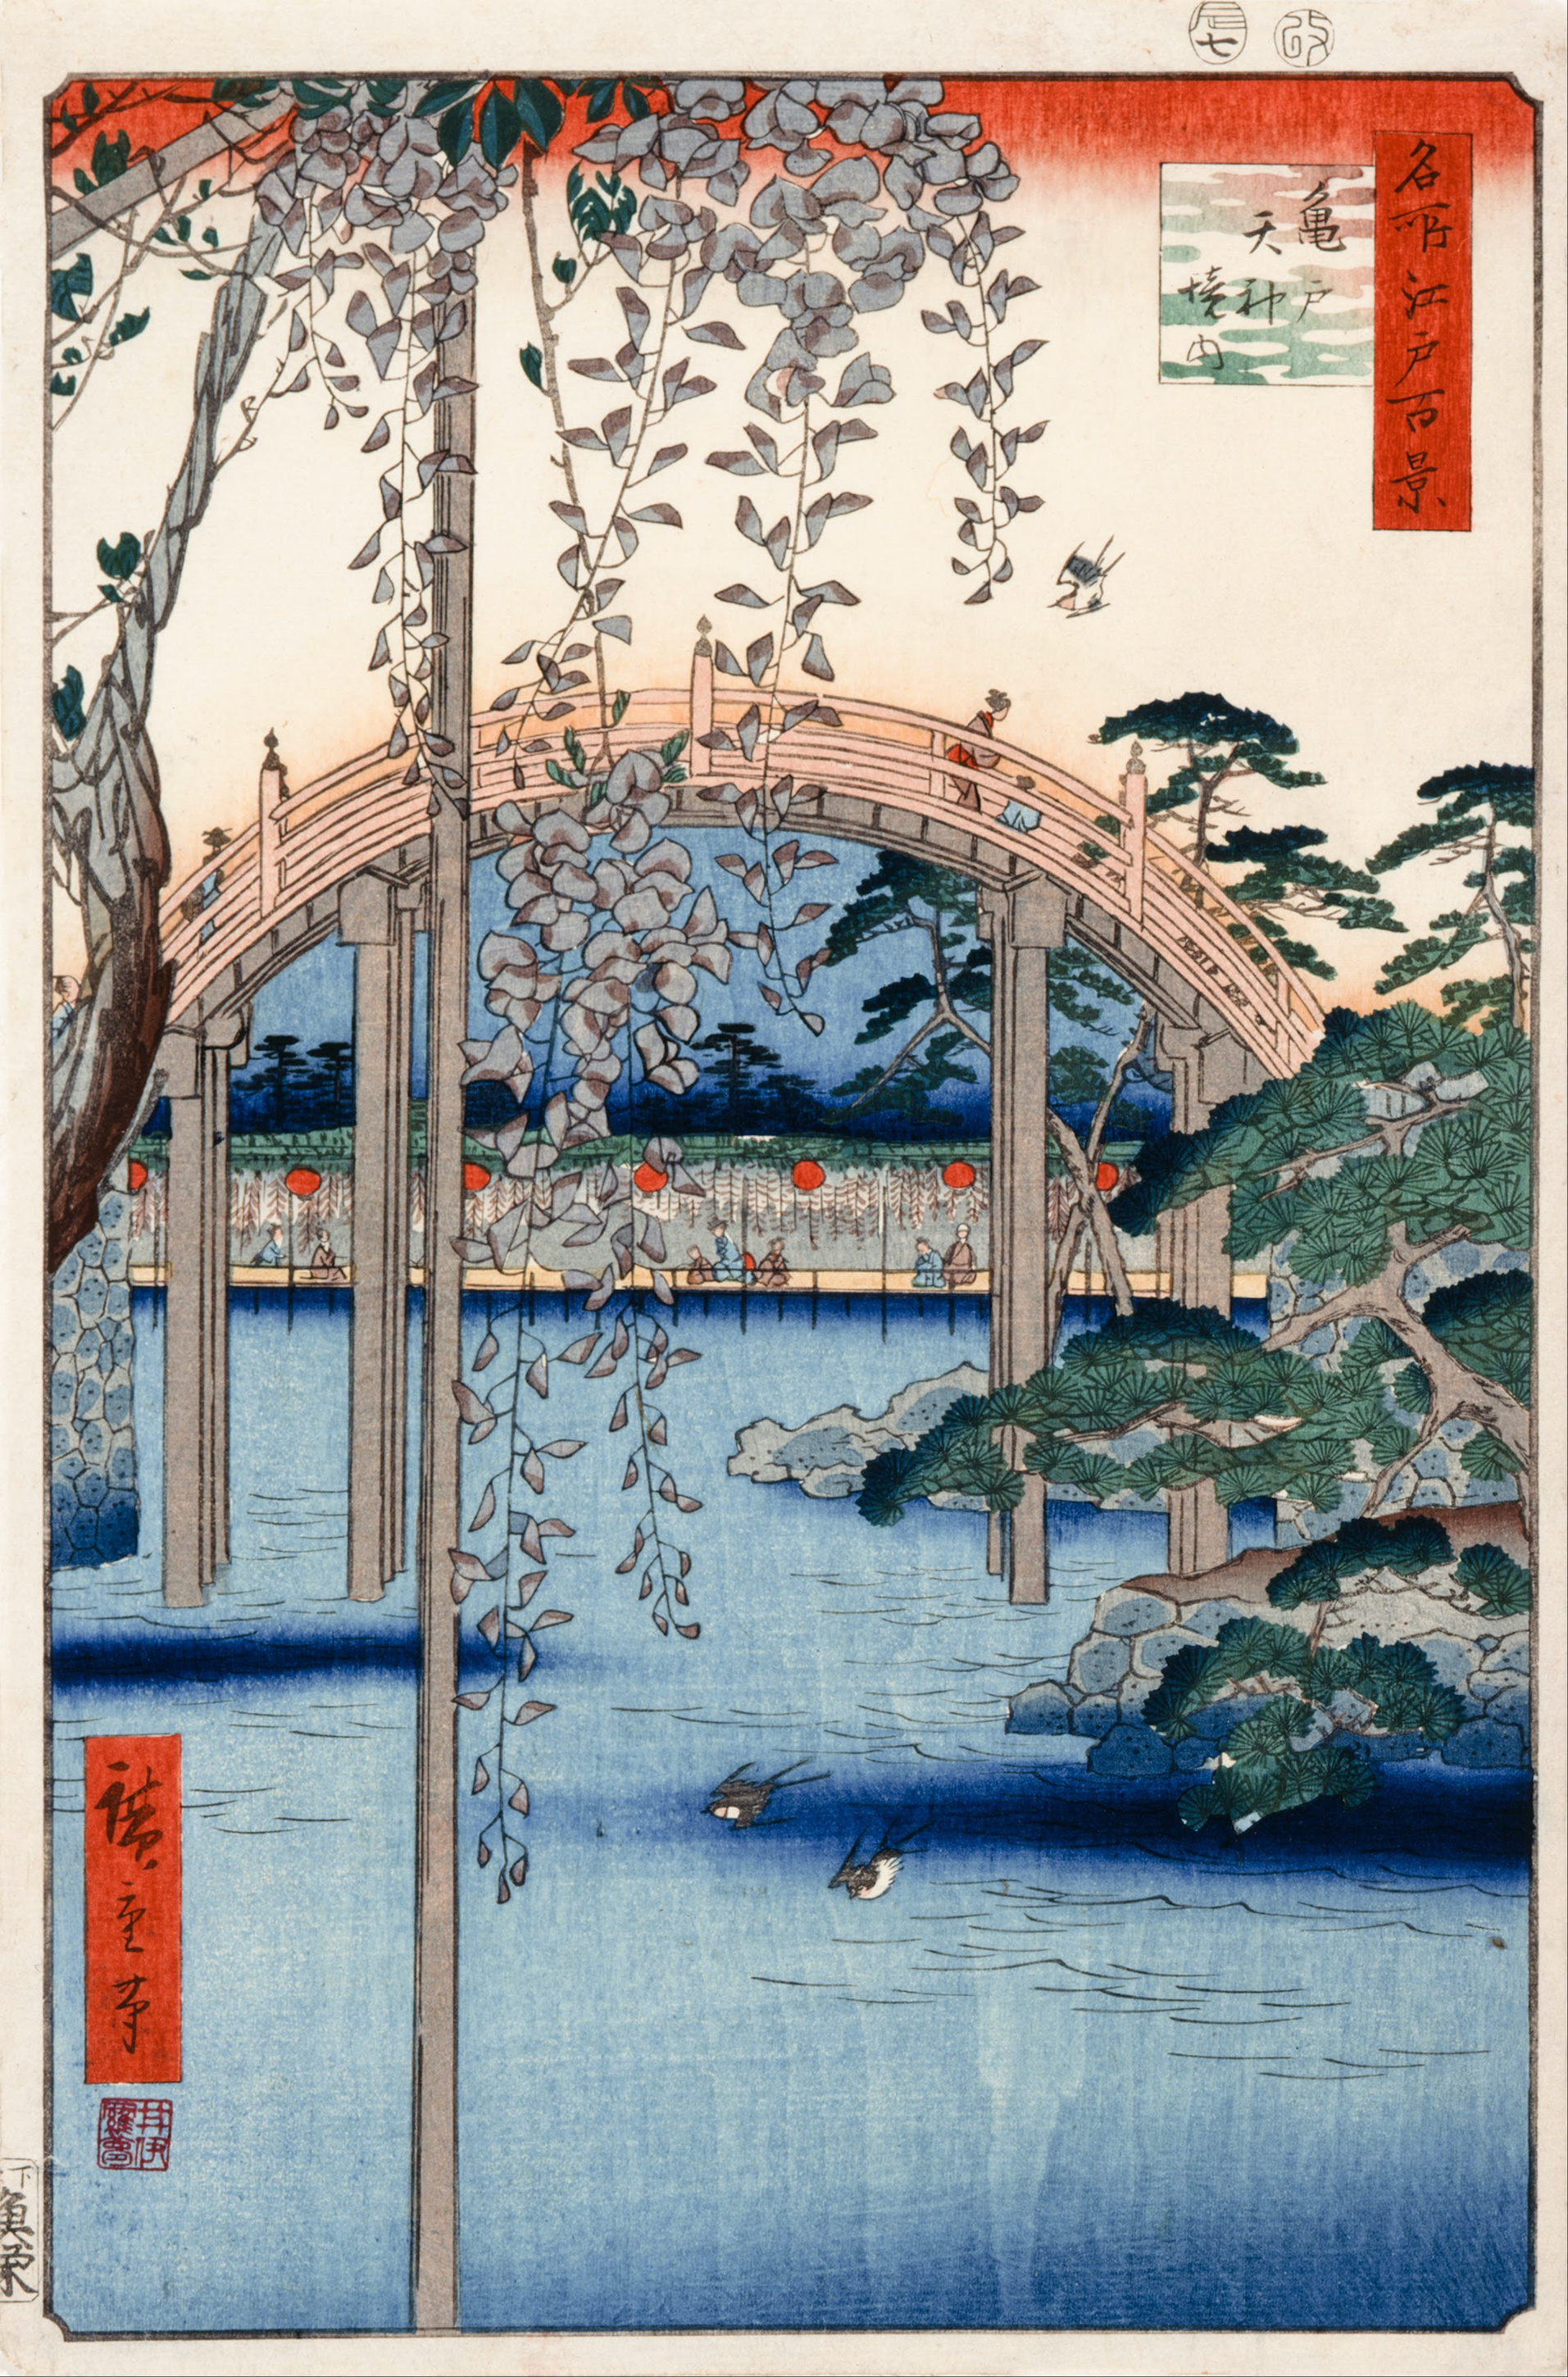 No. 57, A Kameido Tenjin szentély területe by  Hiroshige - 1856 - 34 × 22,9 cm 